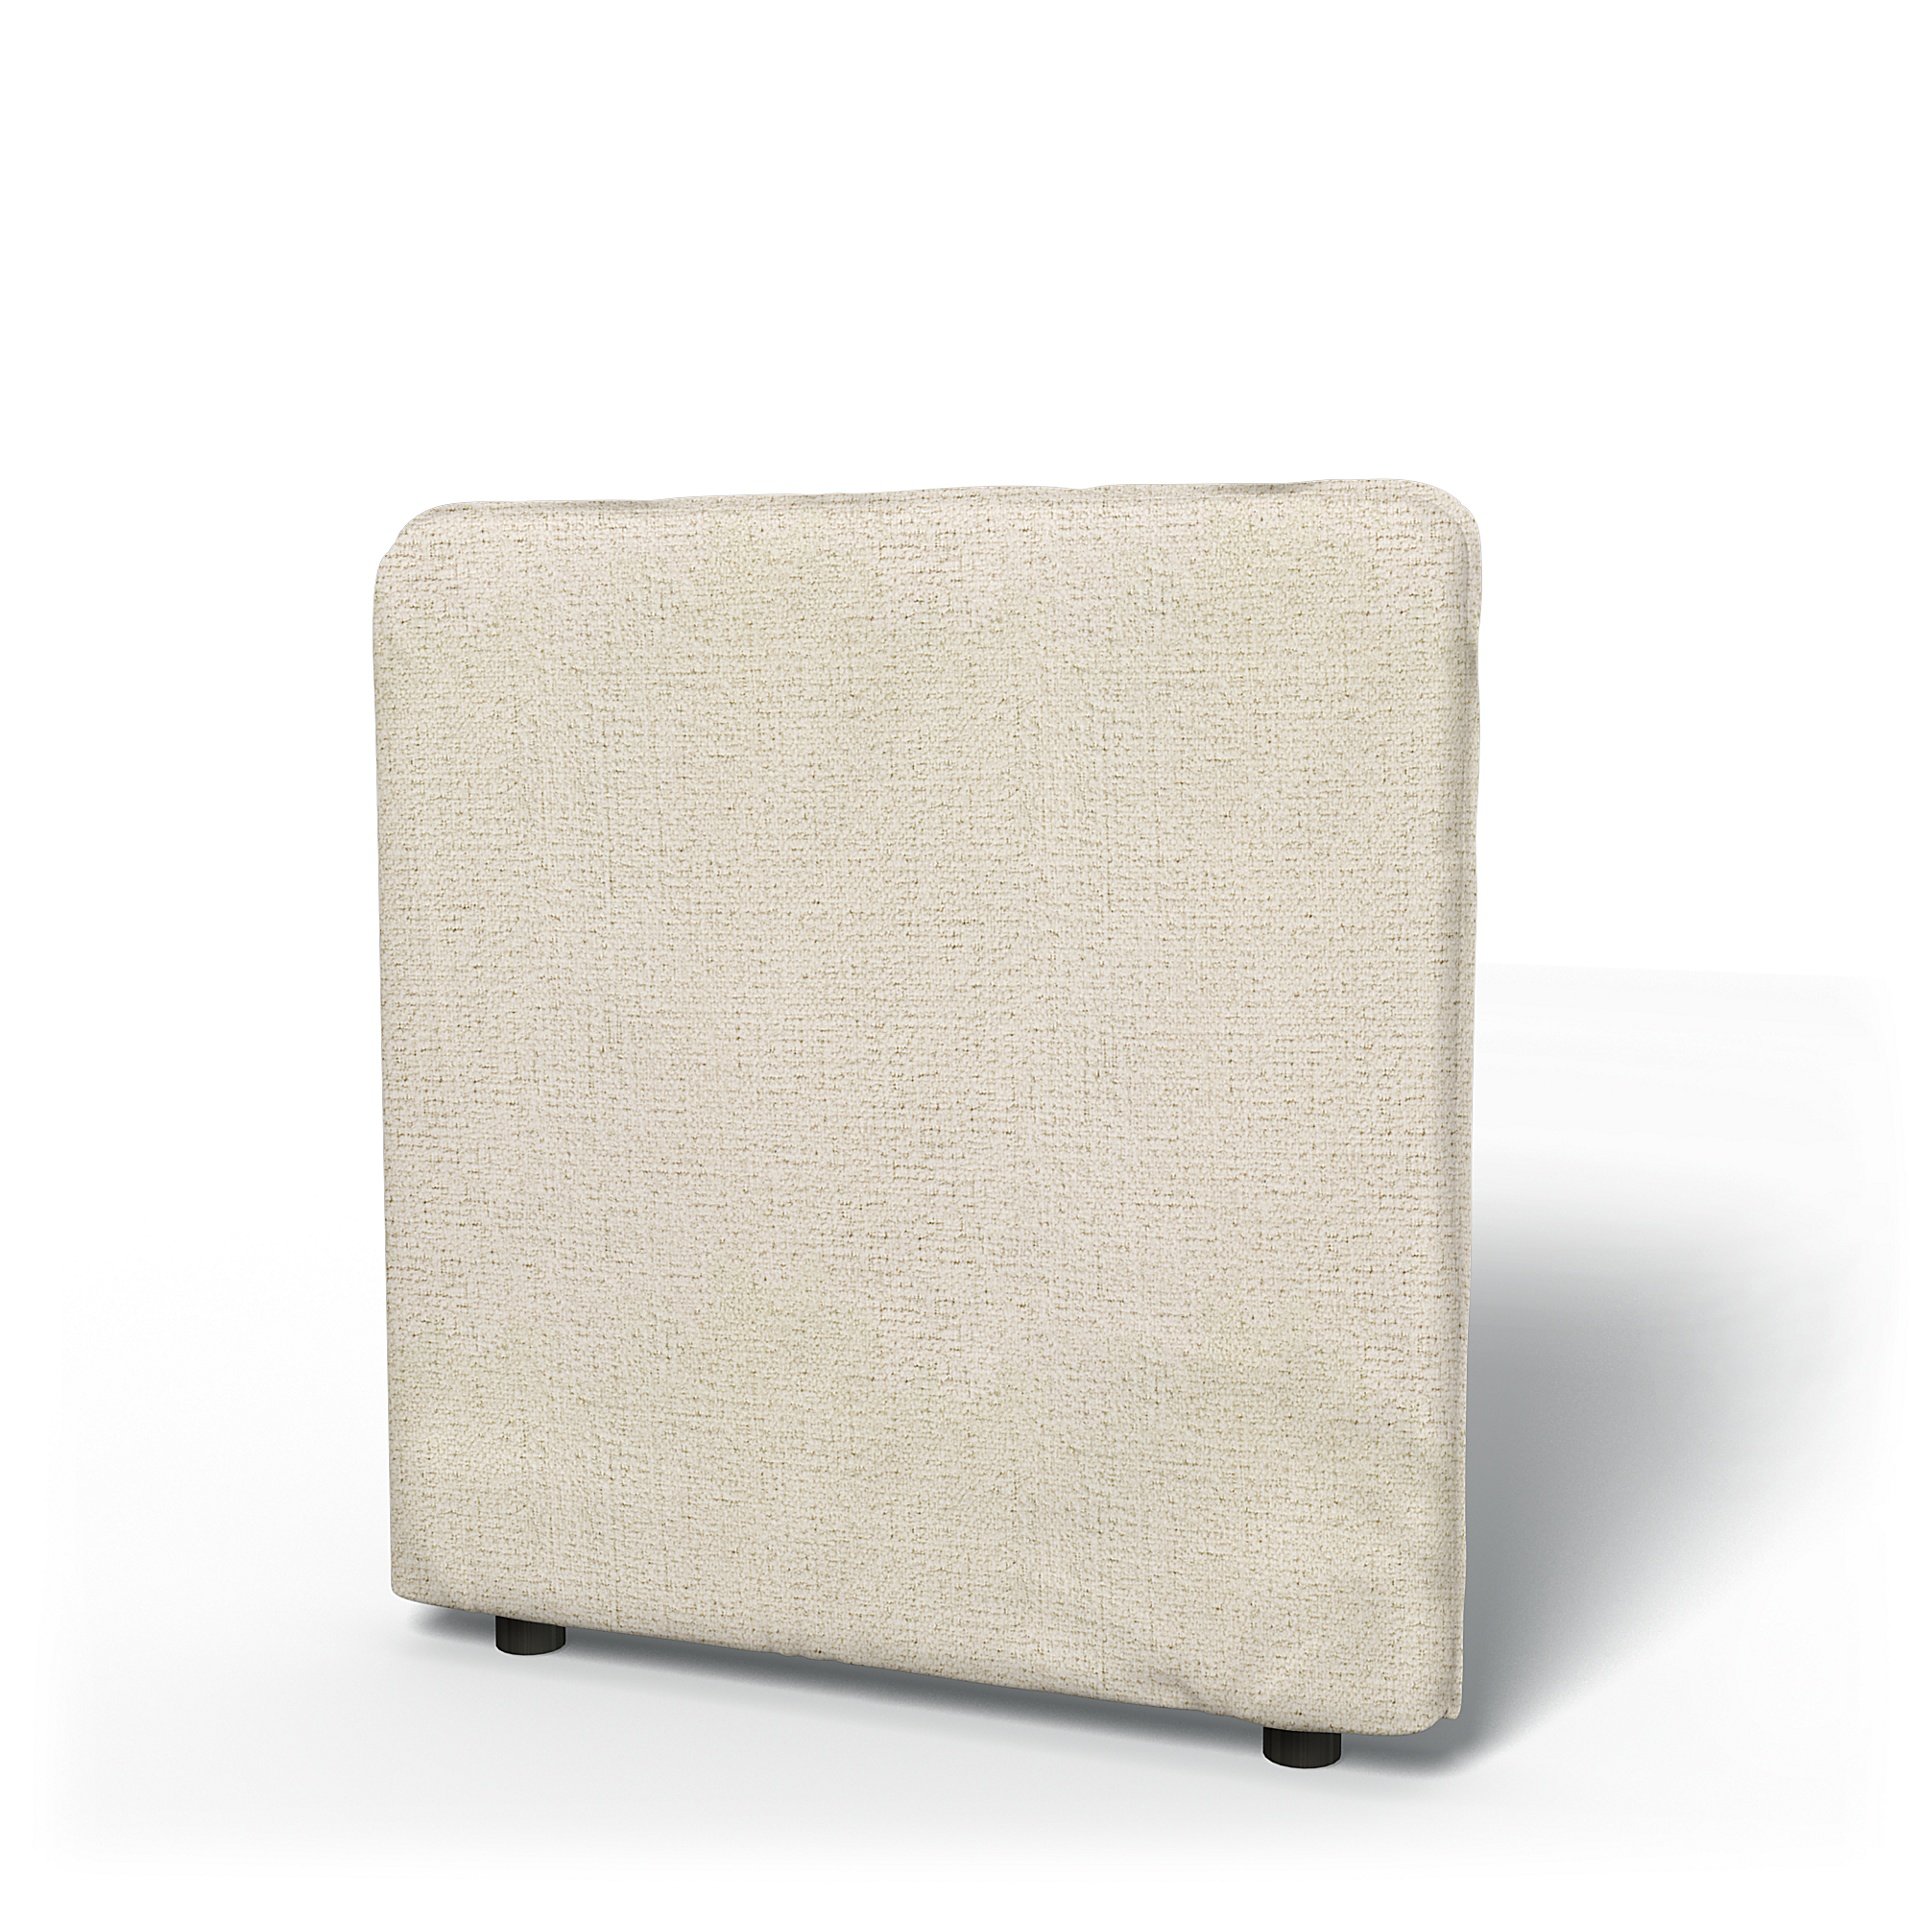 IKEA - Vallentuna Low Backrest Cover 80x80cm 32x32in, Ecru, Boucle & Texture - Bemz